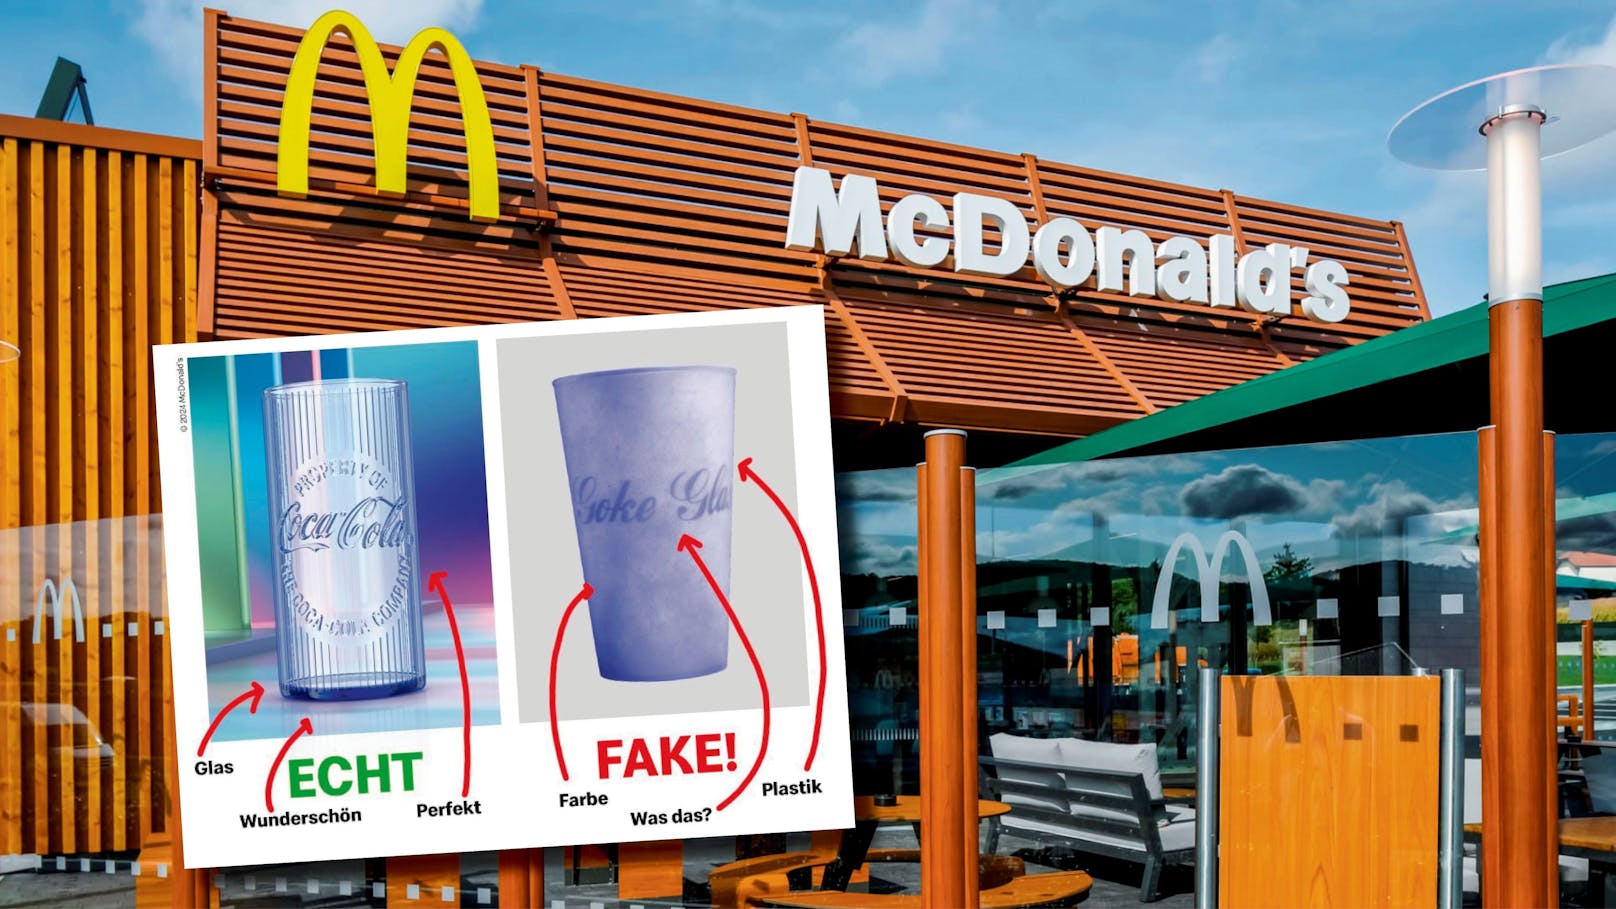 "Fake!": Davor warnt McDonald's jetzt alle seine Kunden